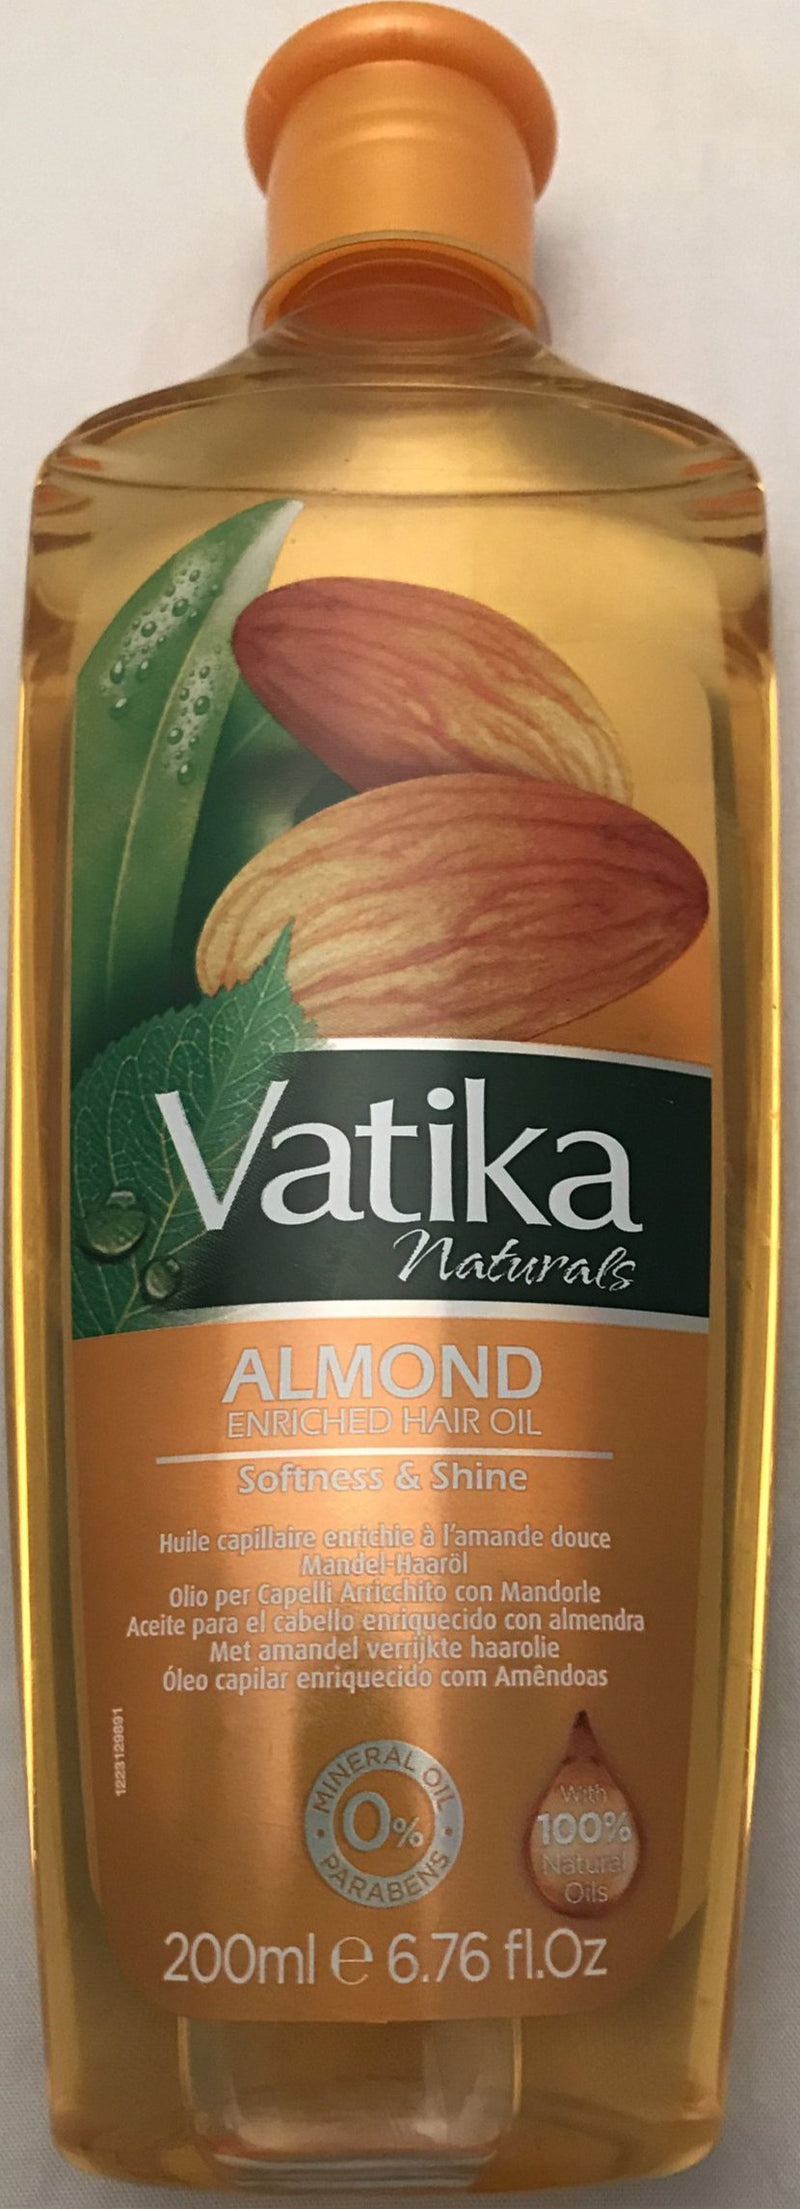 Vatika Almond Hair Oil - 200ml - ExoticEstore